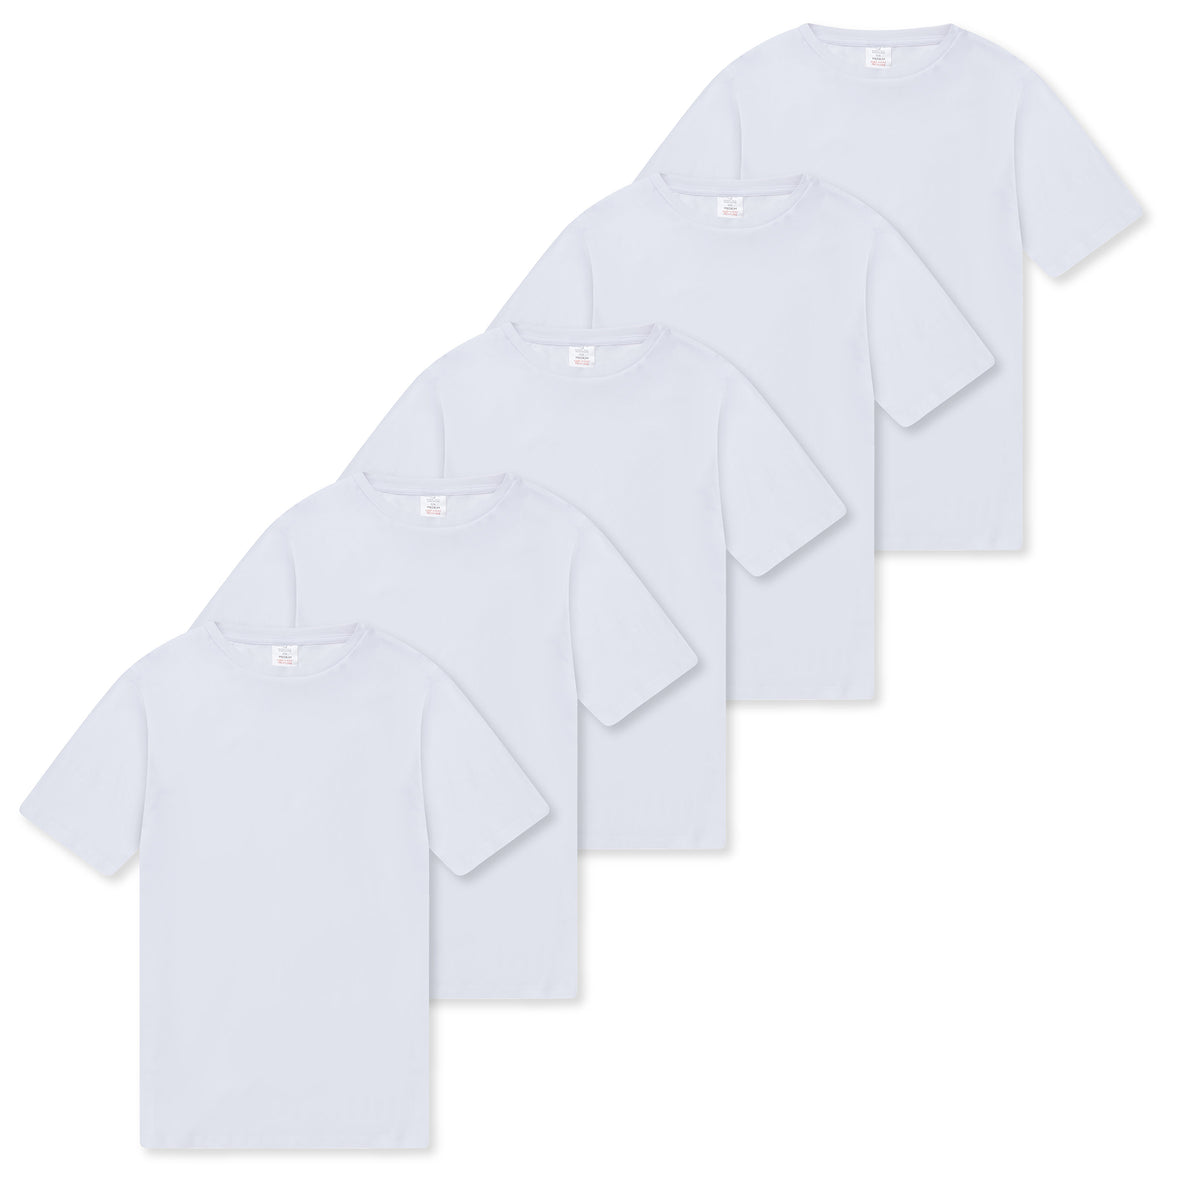 Mens 5 Pack T- Shirt White